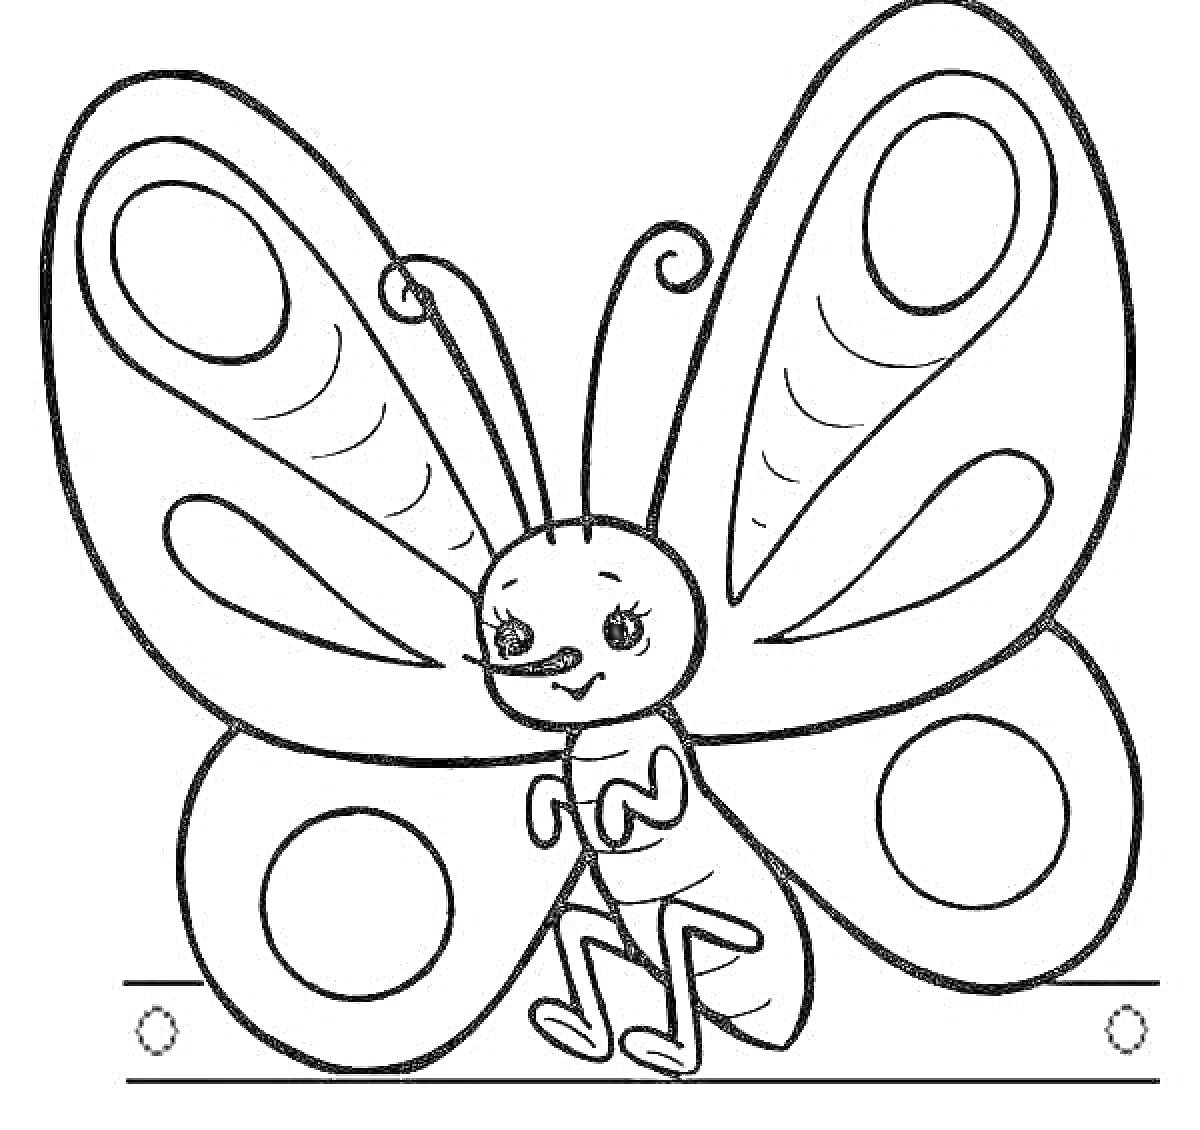 Раскраска Бабочка с большими крыльями, сидящая на планке, с декоративными кругами и узорами на крыльях